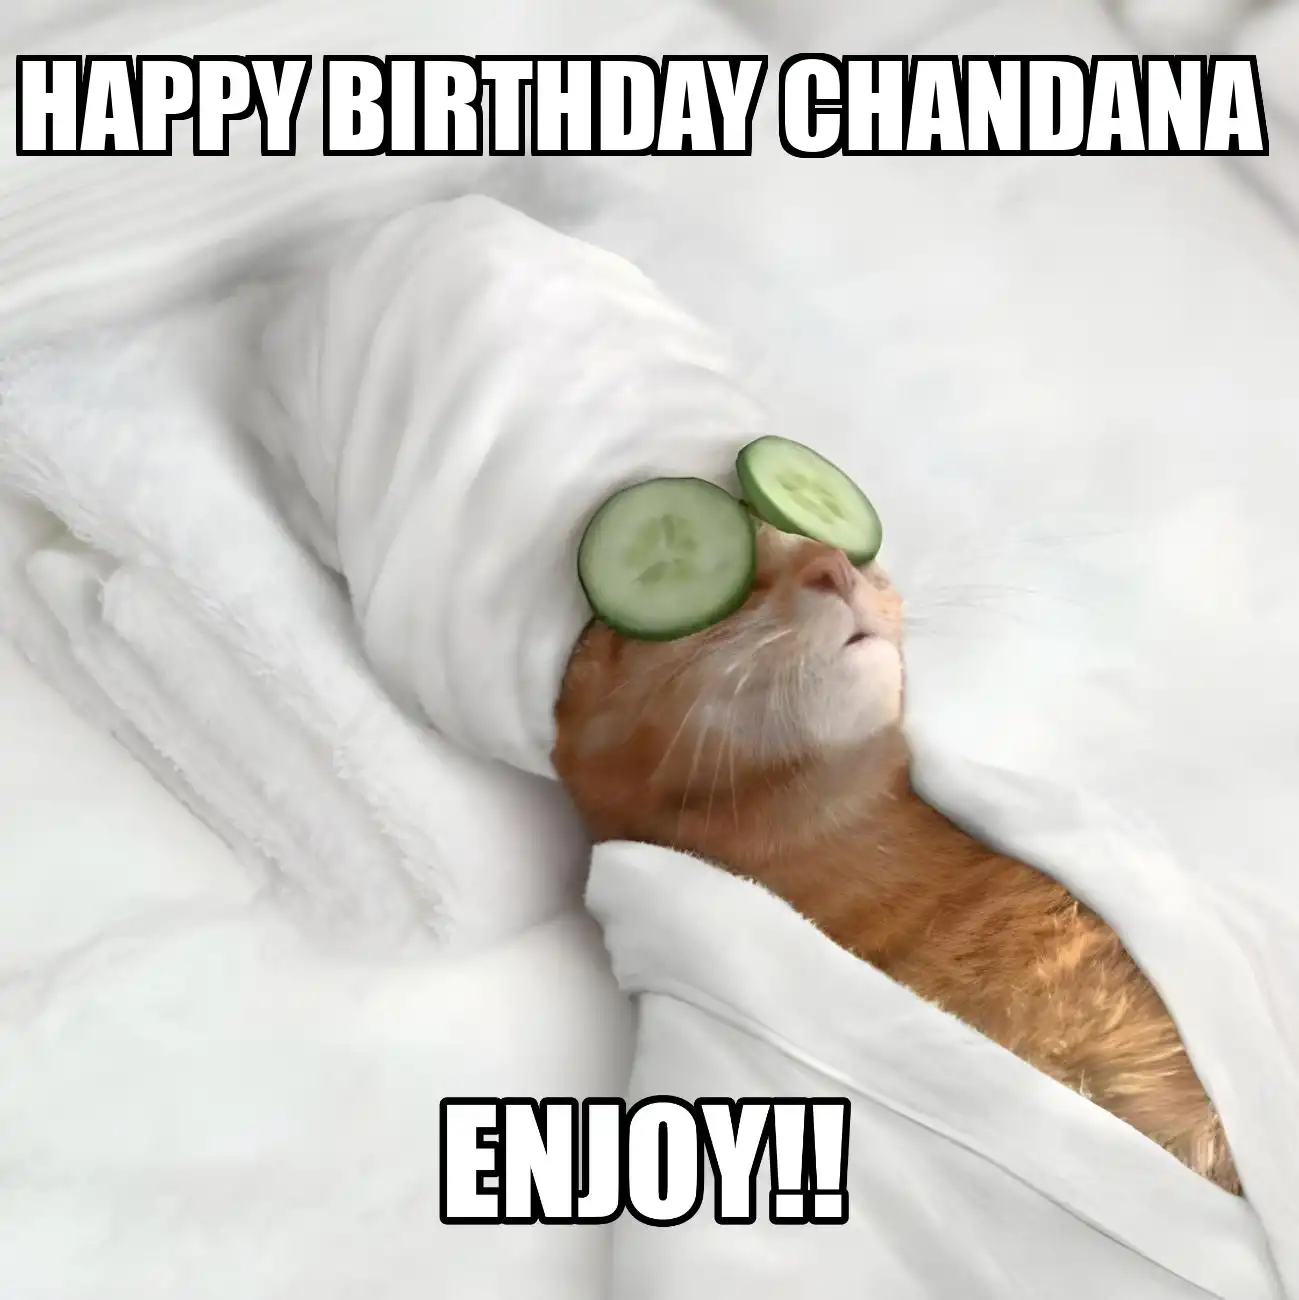 Happy Birthday Chandana Enjoy Cat Meme